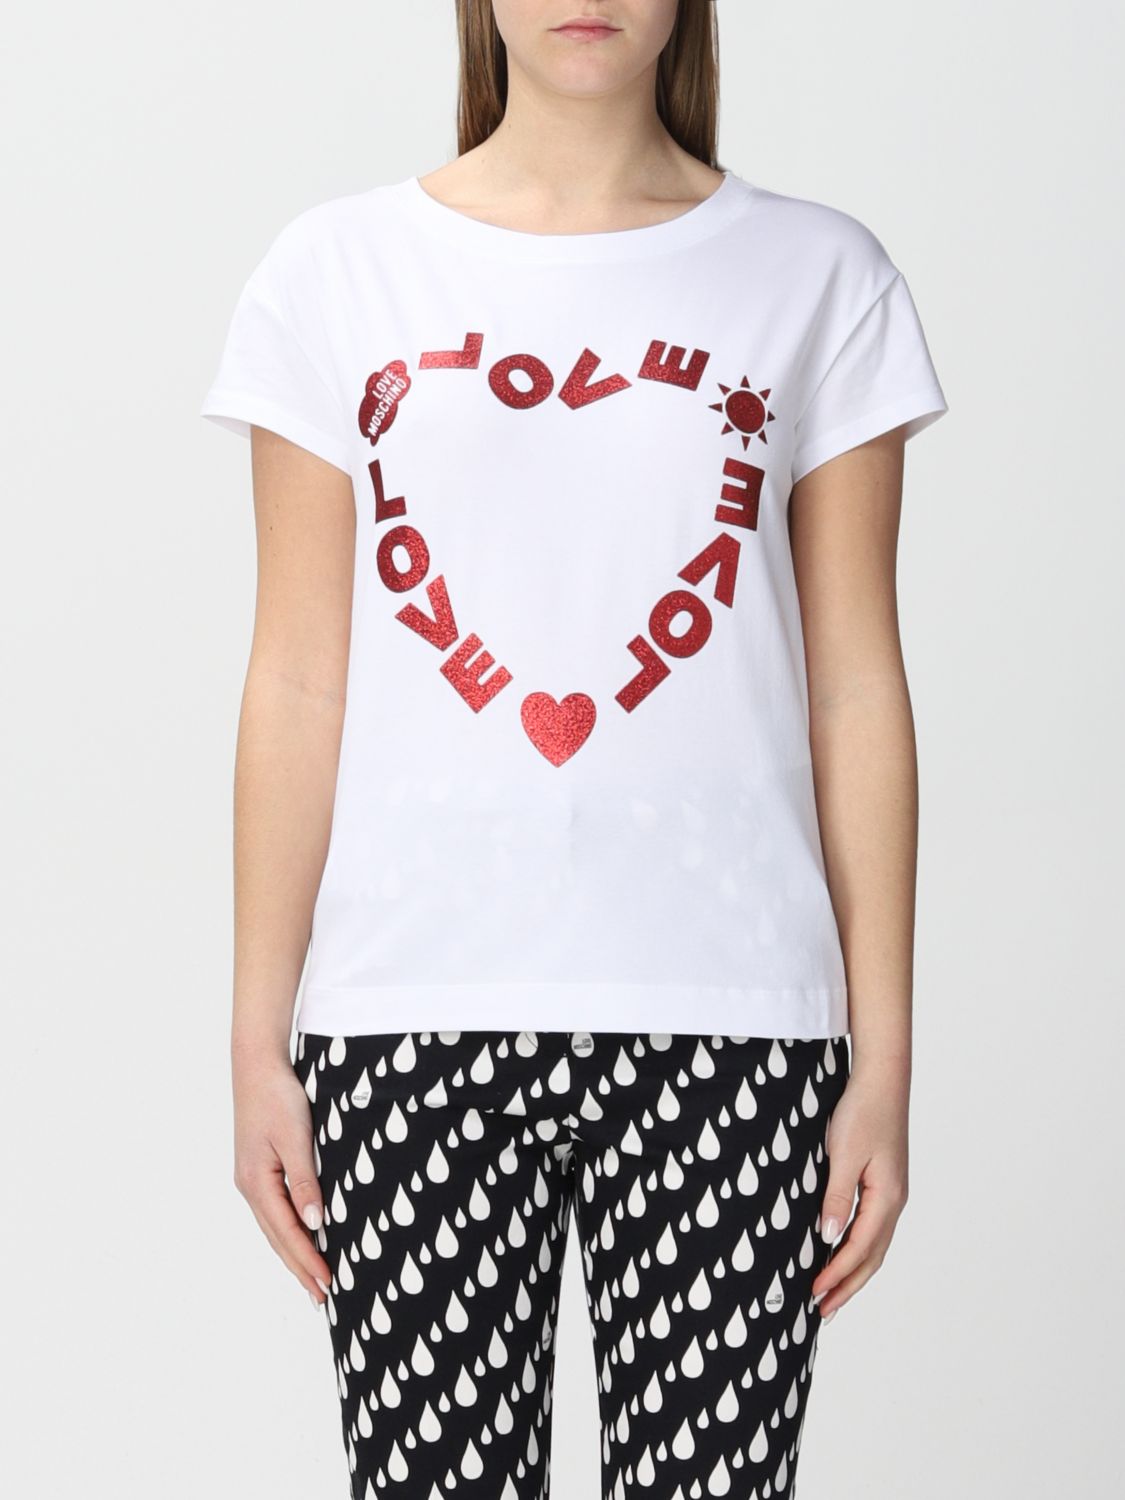 LOVE MOSCHINO: T-shirt women - White | Love Moschino t-shirt ...